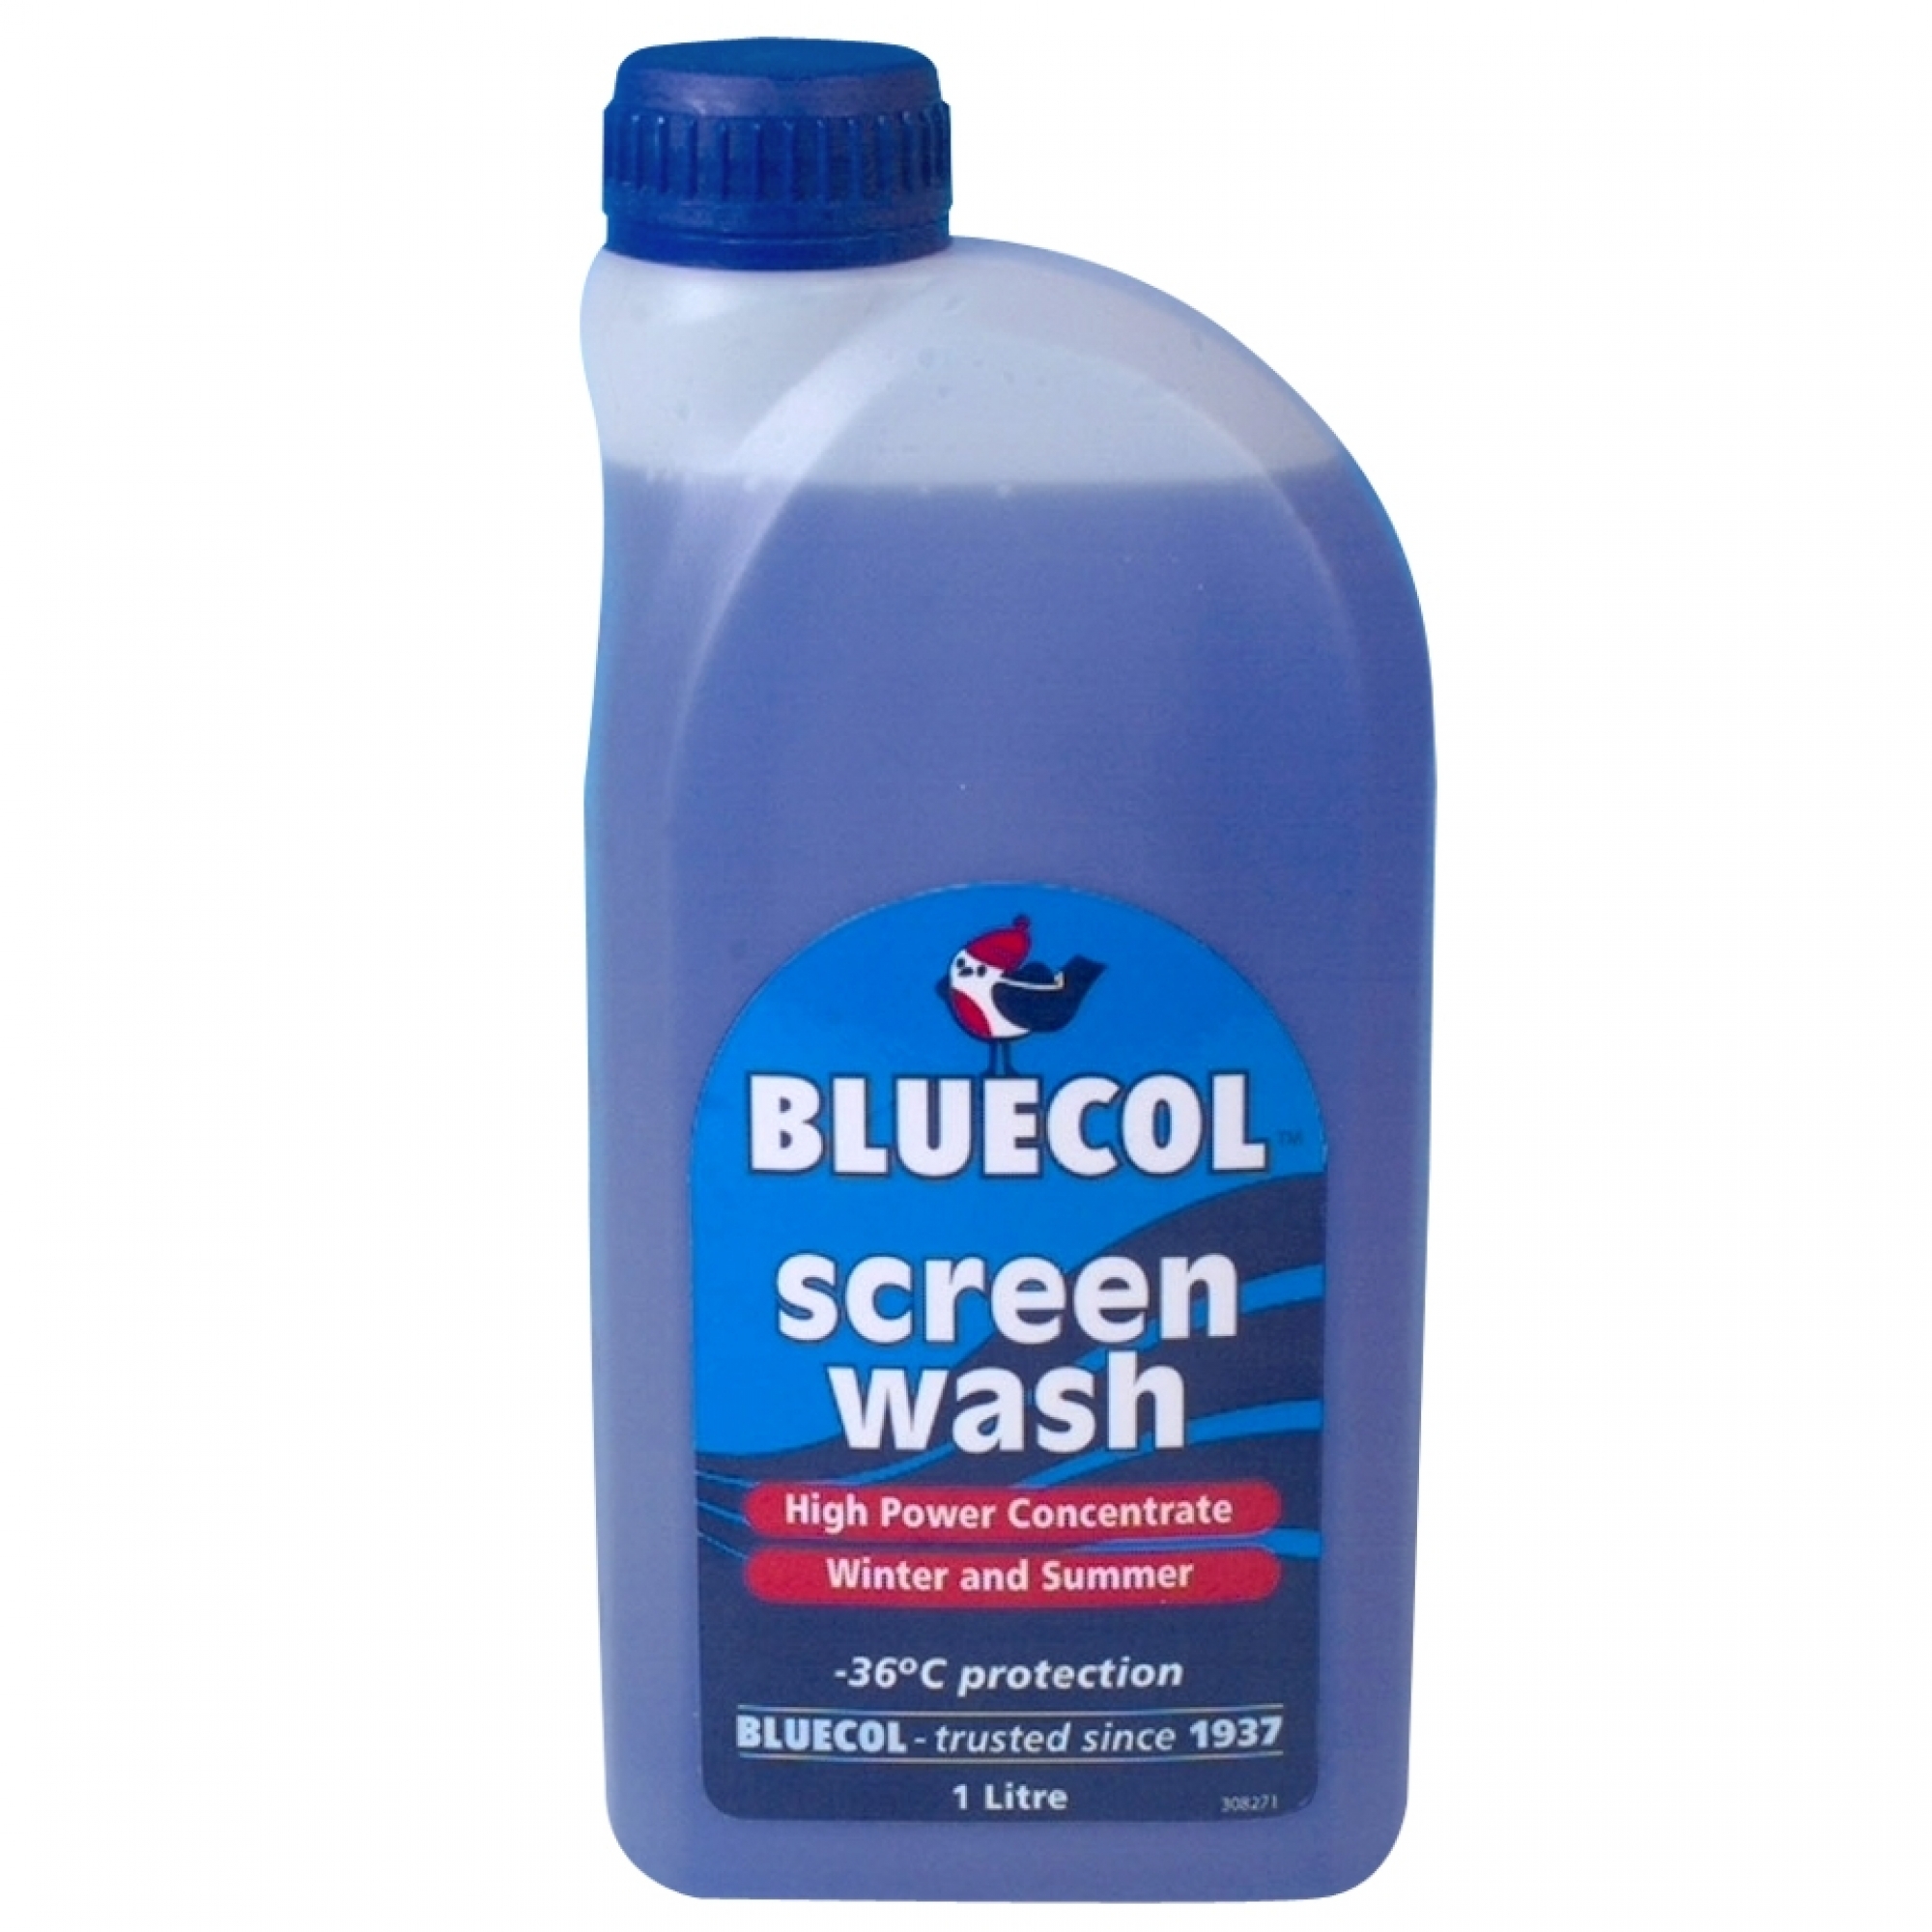 Bluecol screen wash